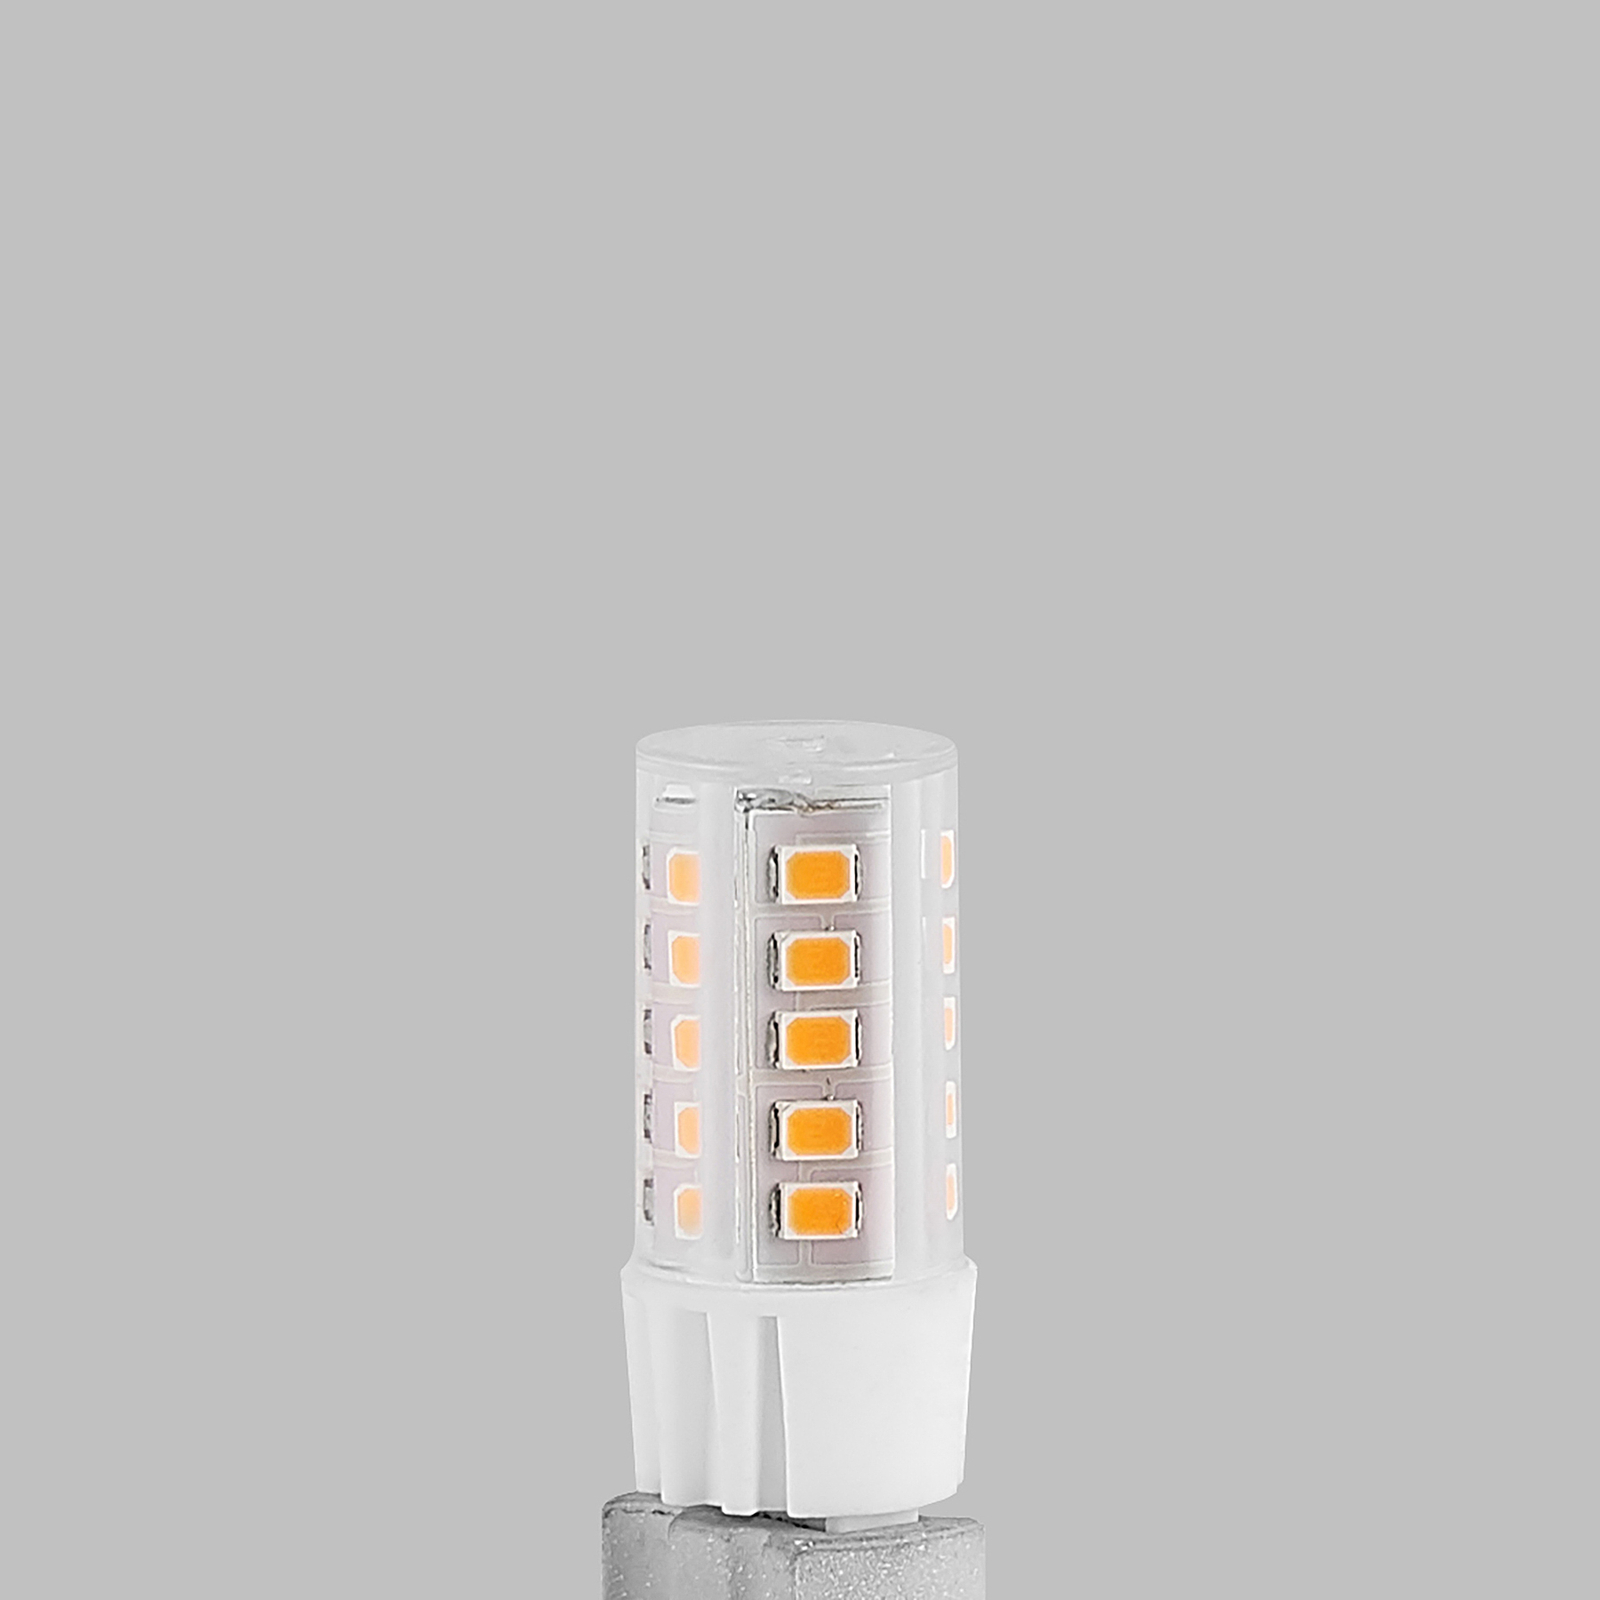 Arcchio bi-pin LED bulb G9 3.5 W 827 2-pack